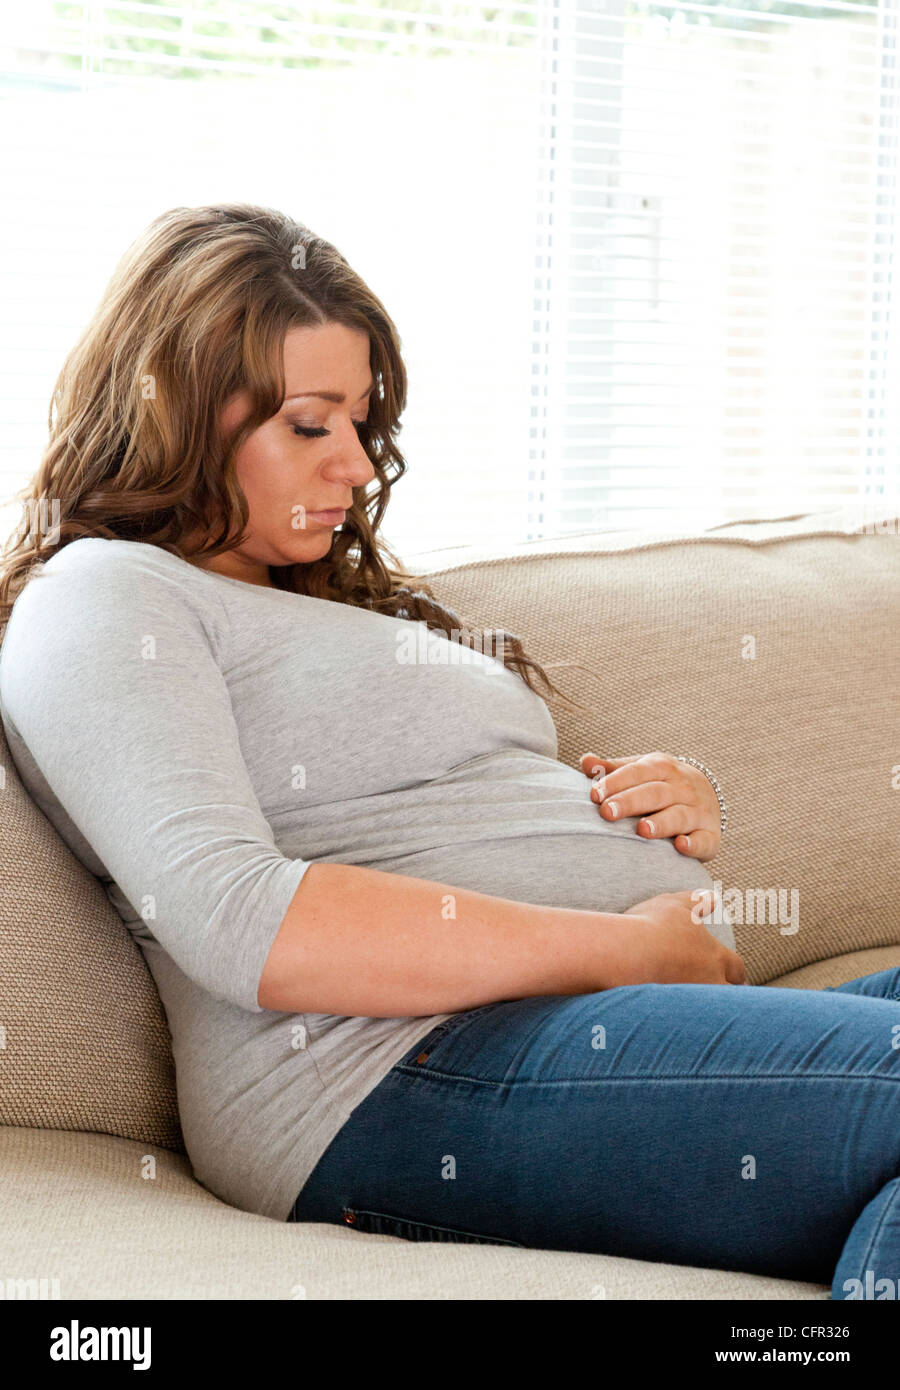 pregnant woman sat on sofa Stock Photo